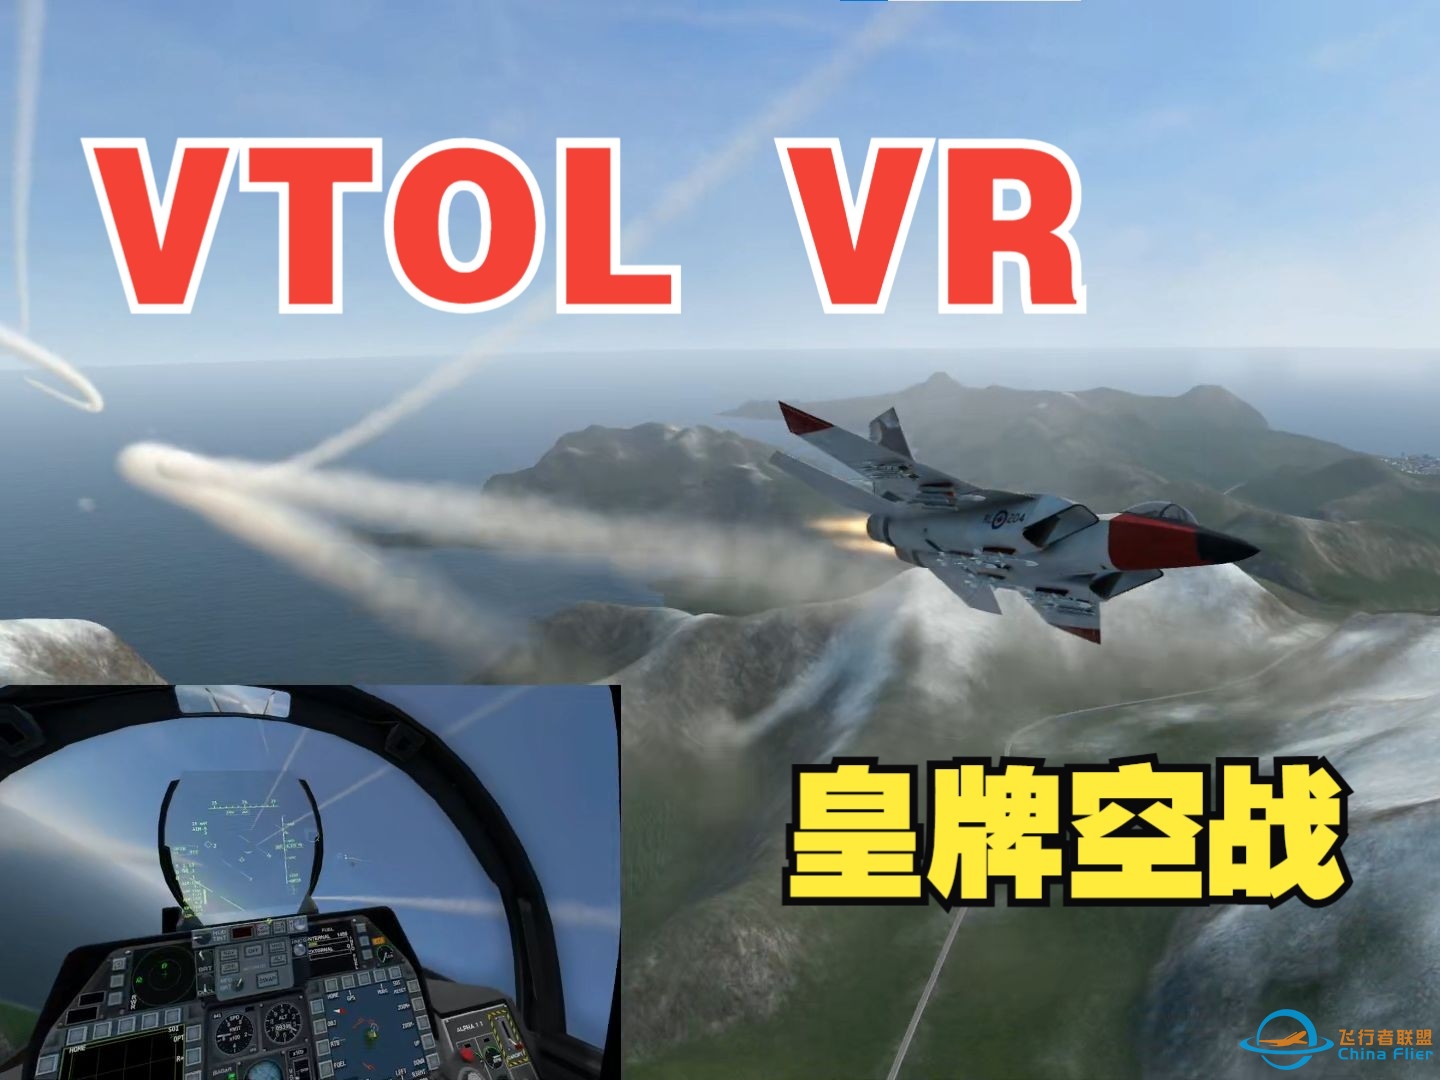 VTOL VR 打出了皇牌空战的感觉！！！-6020 